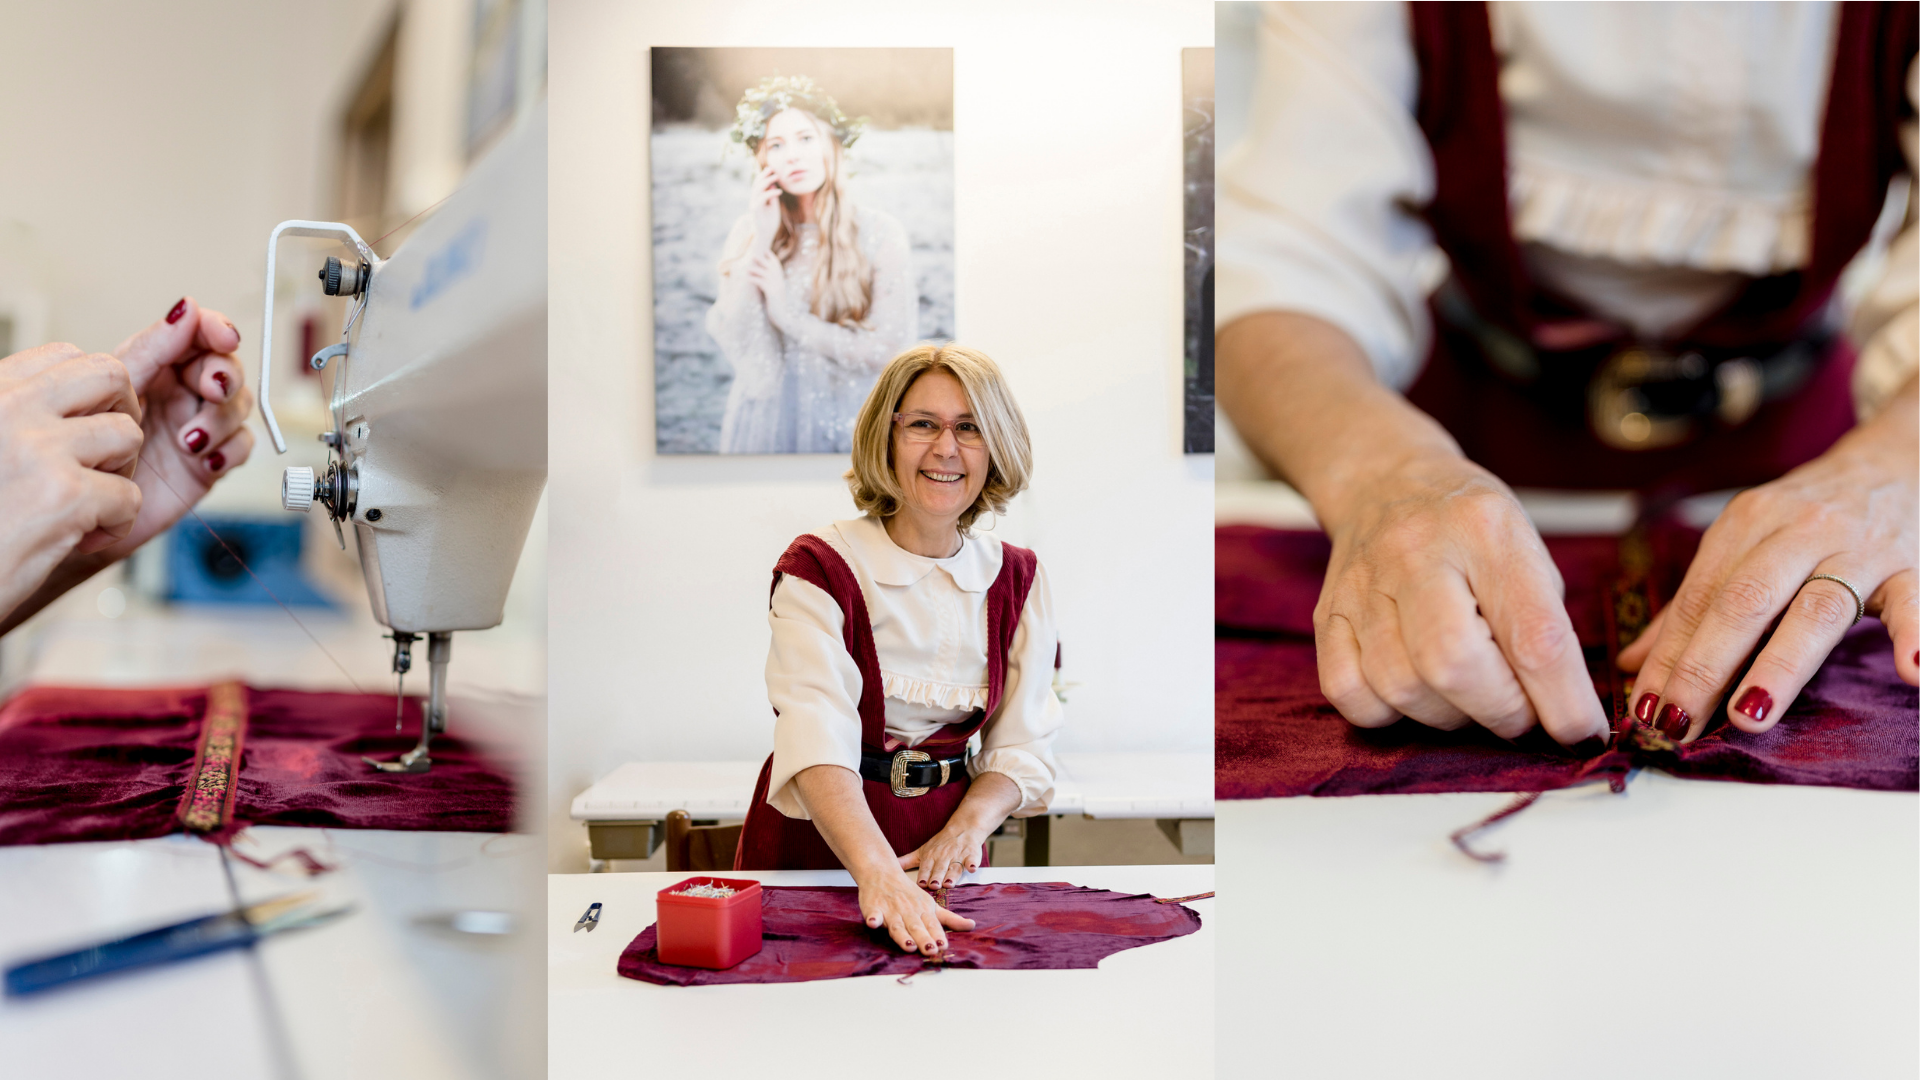 sabina, la sarta di vestiti cottagecore made in Italy